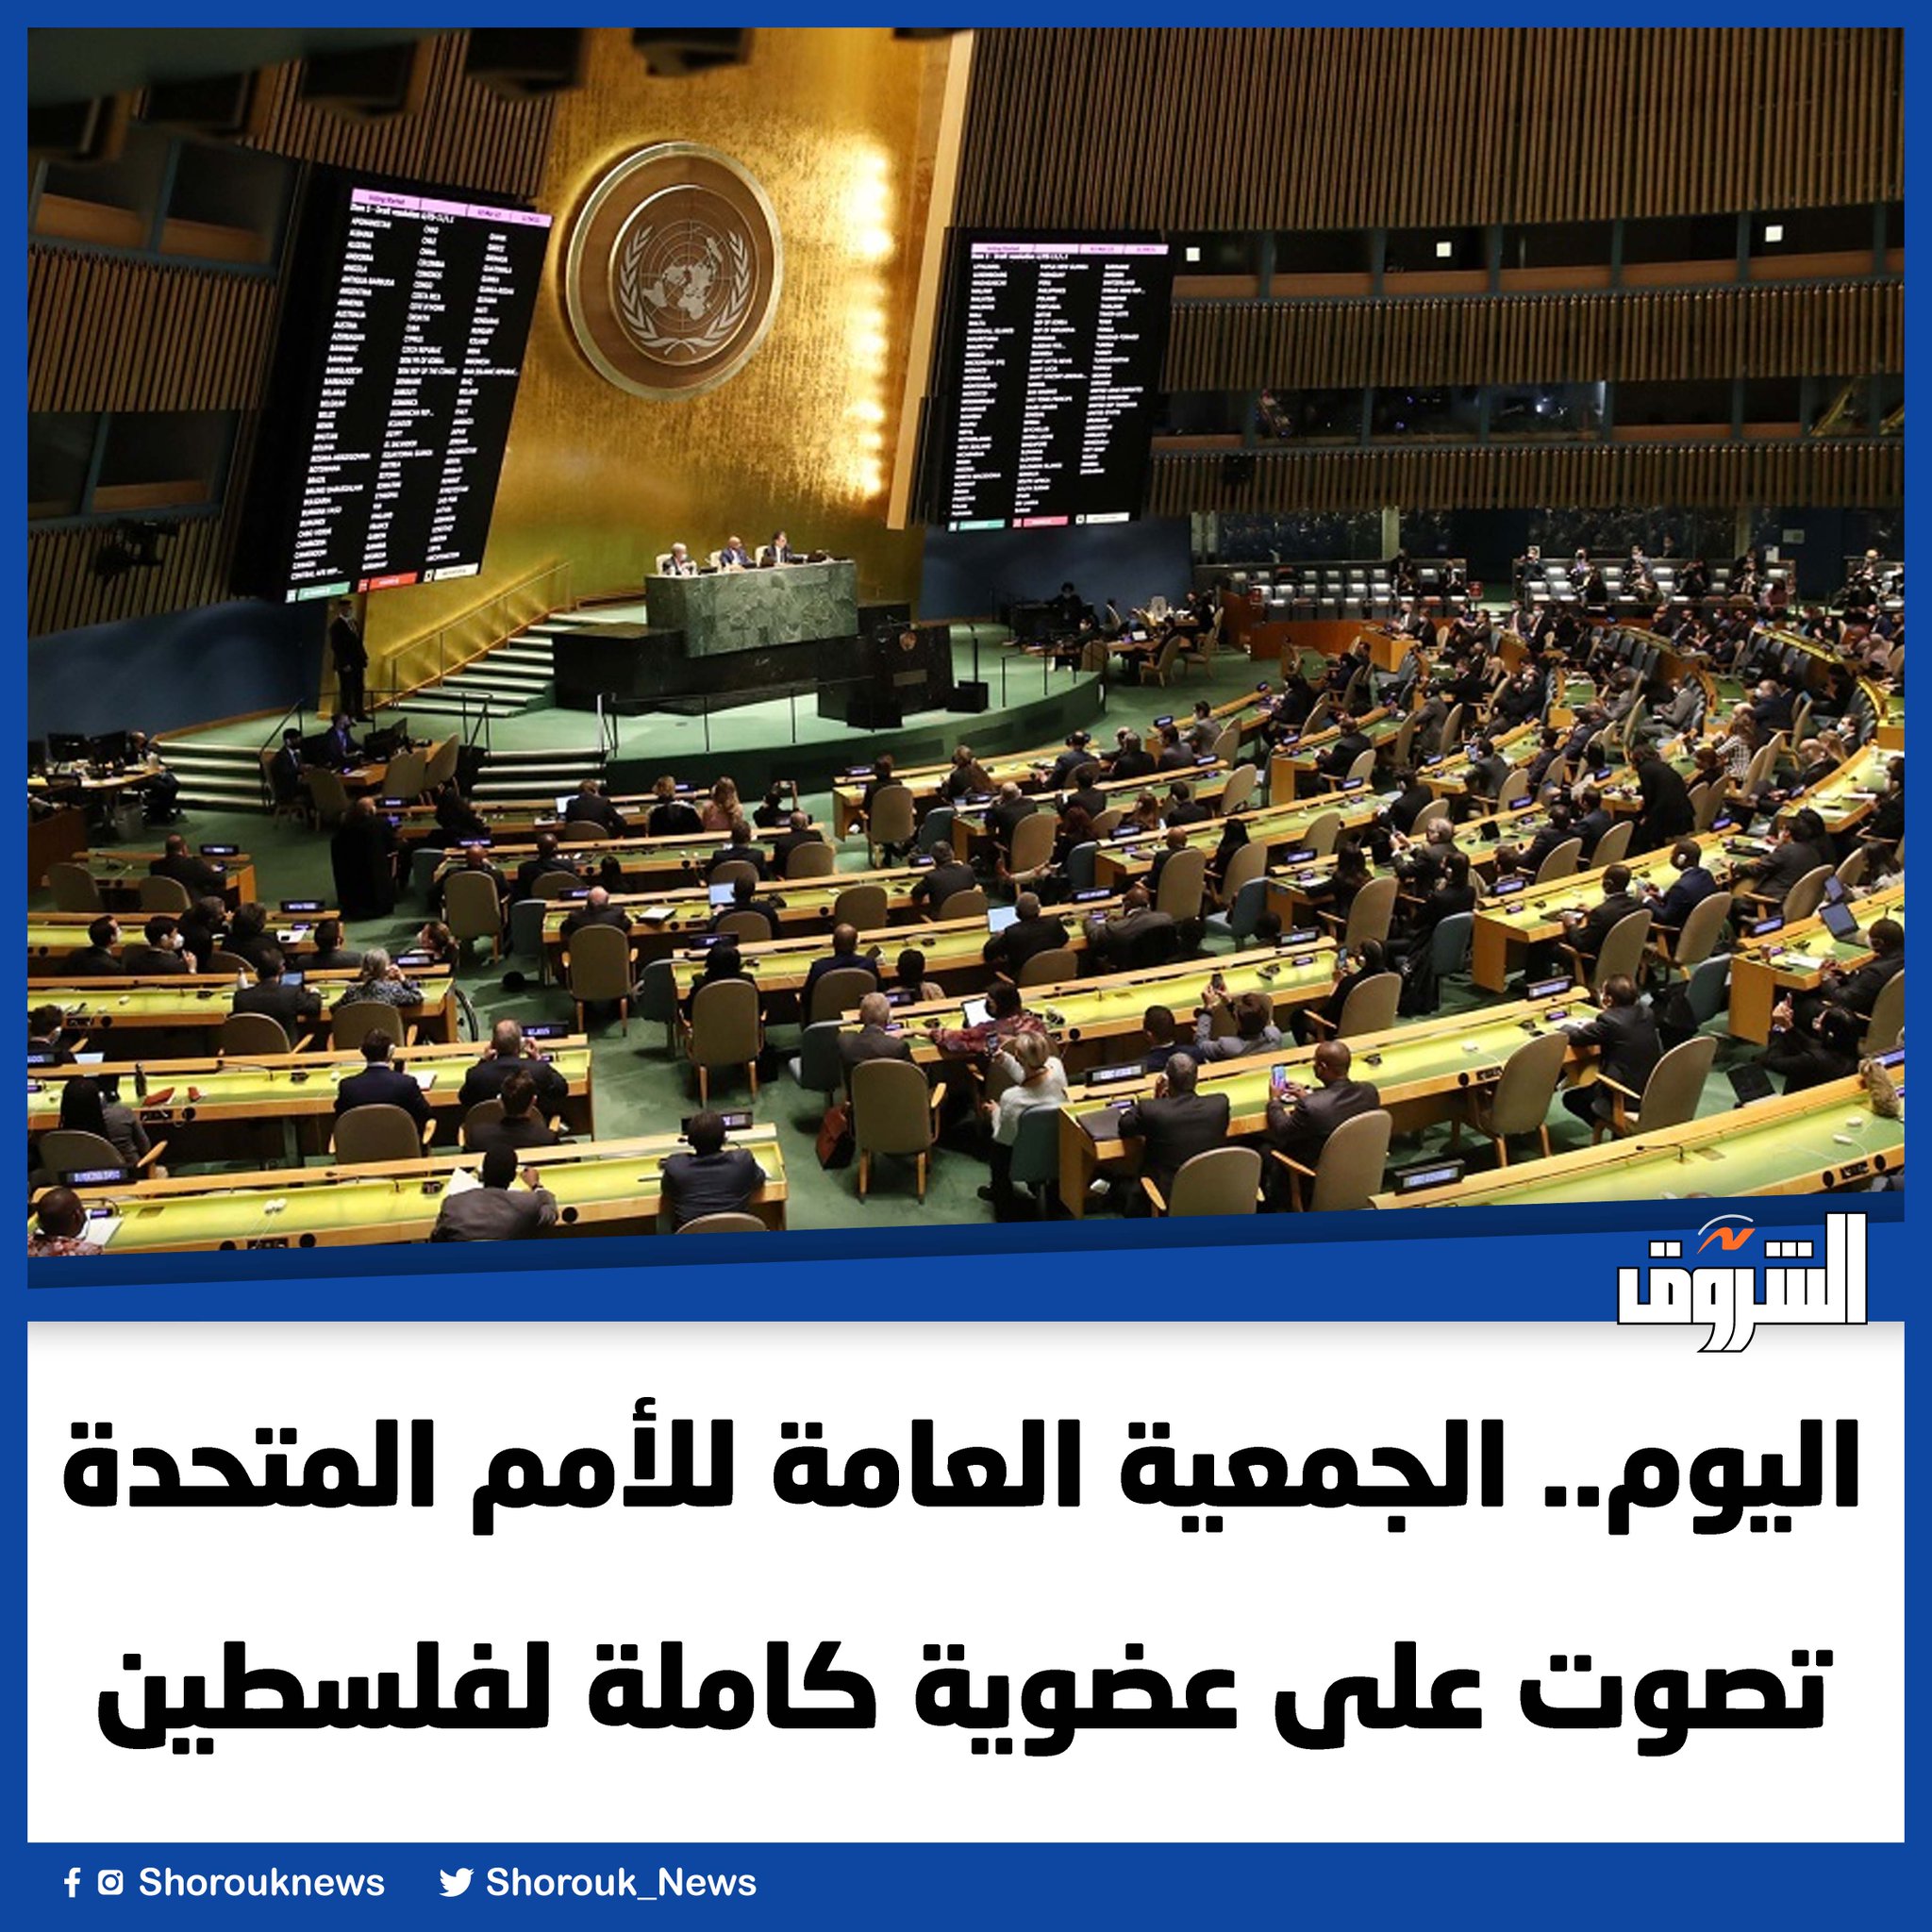 تصوت الجمعية العامة للأمم المتحدة، اليوم الجمعة، على مشروع قرار جديد بشأن أحقية دولة فلسطين بالعضوية الكاملة، في المنظمة الدولية، مع توصية مجلس الأمن الدولي بإعادة النظر في الأمر بشكل إيجابي 